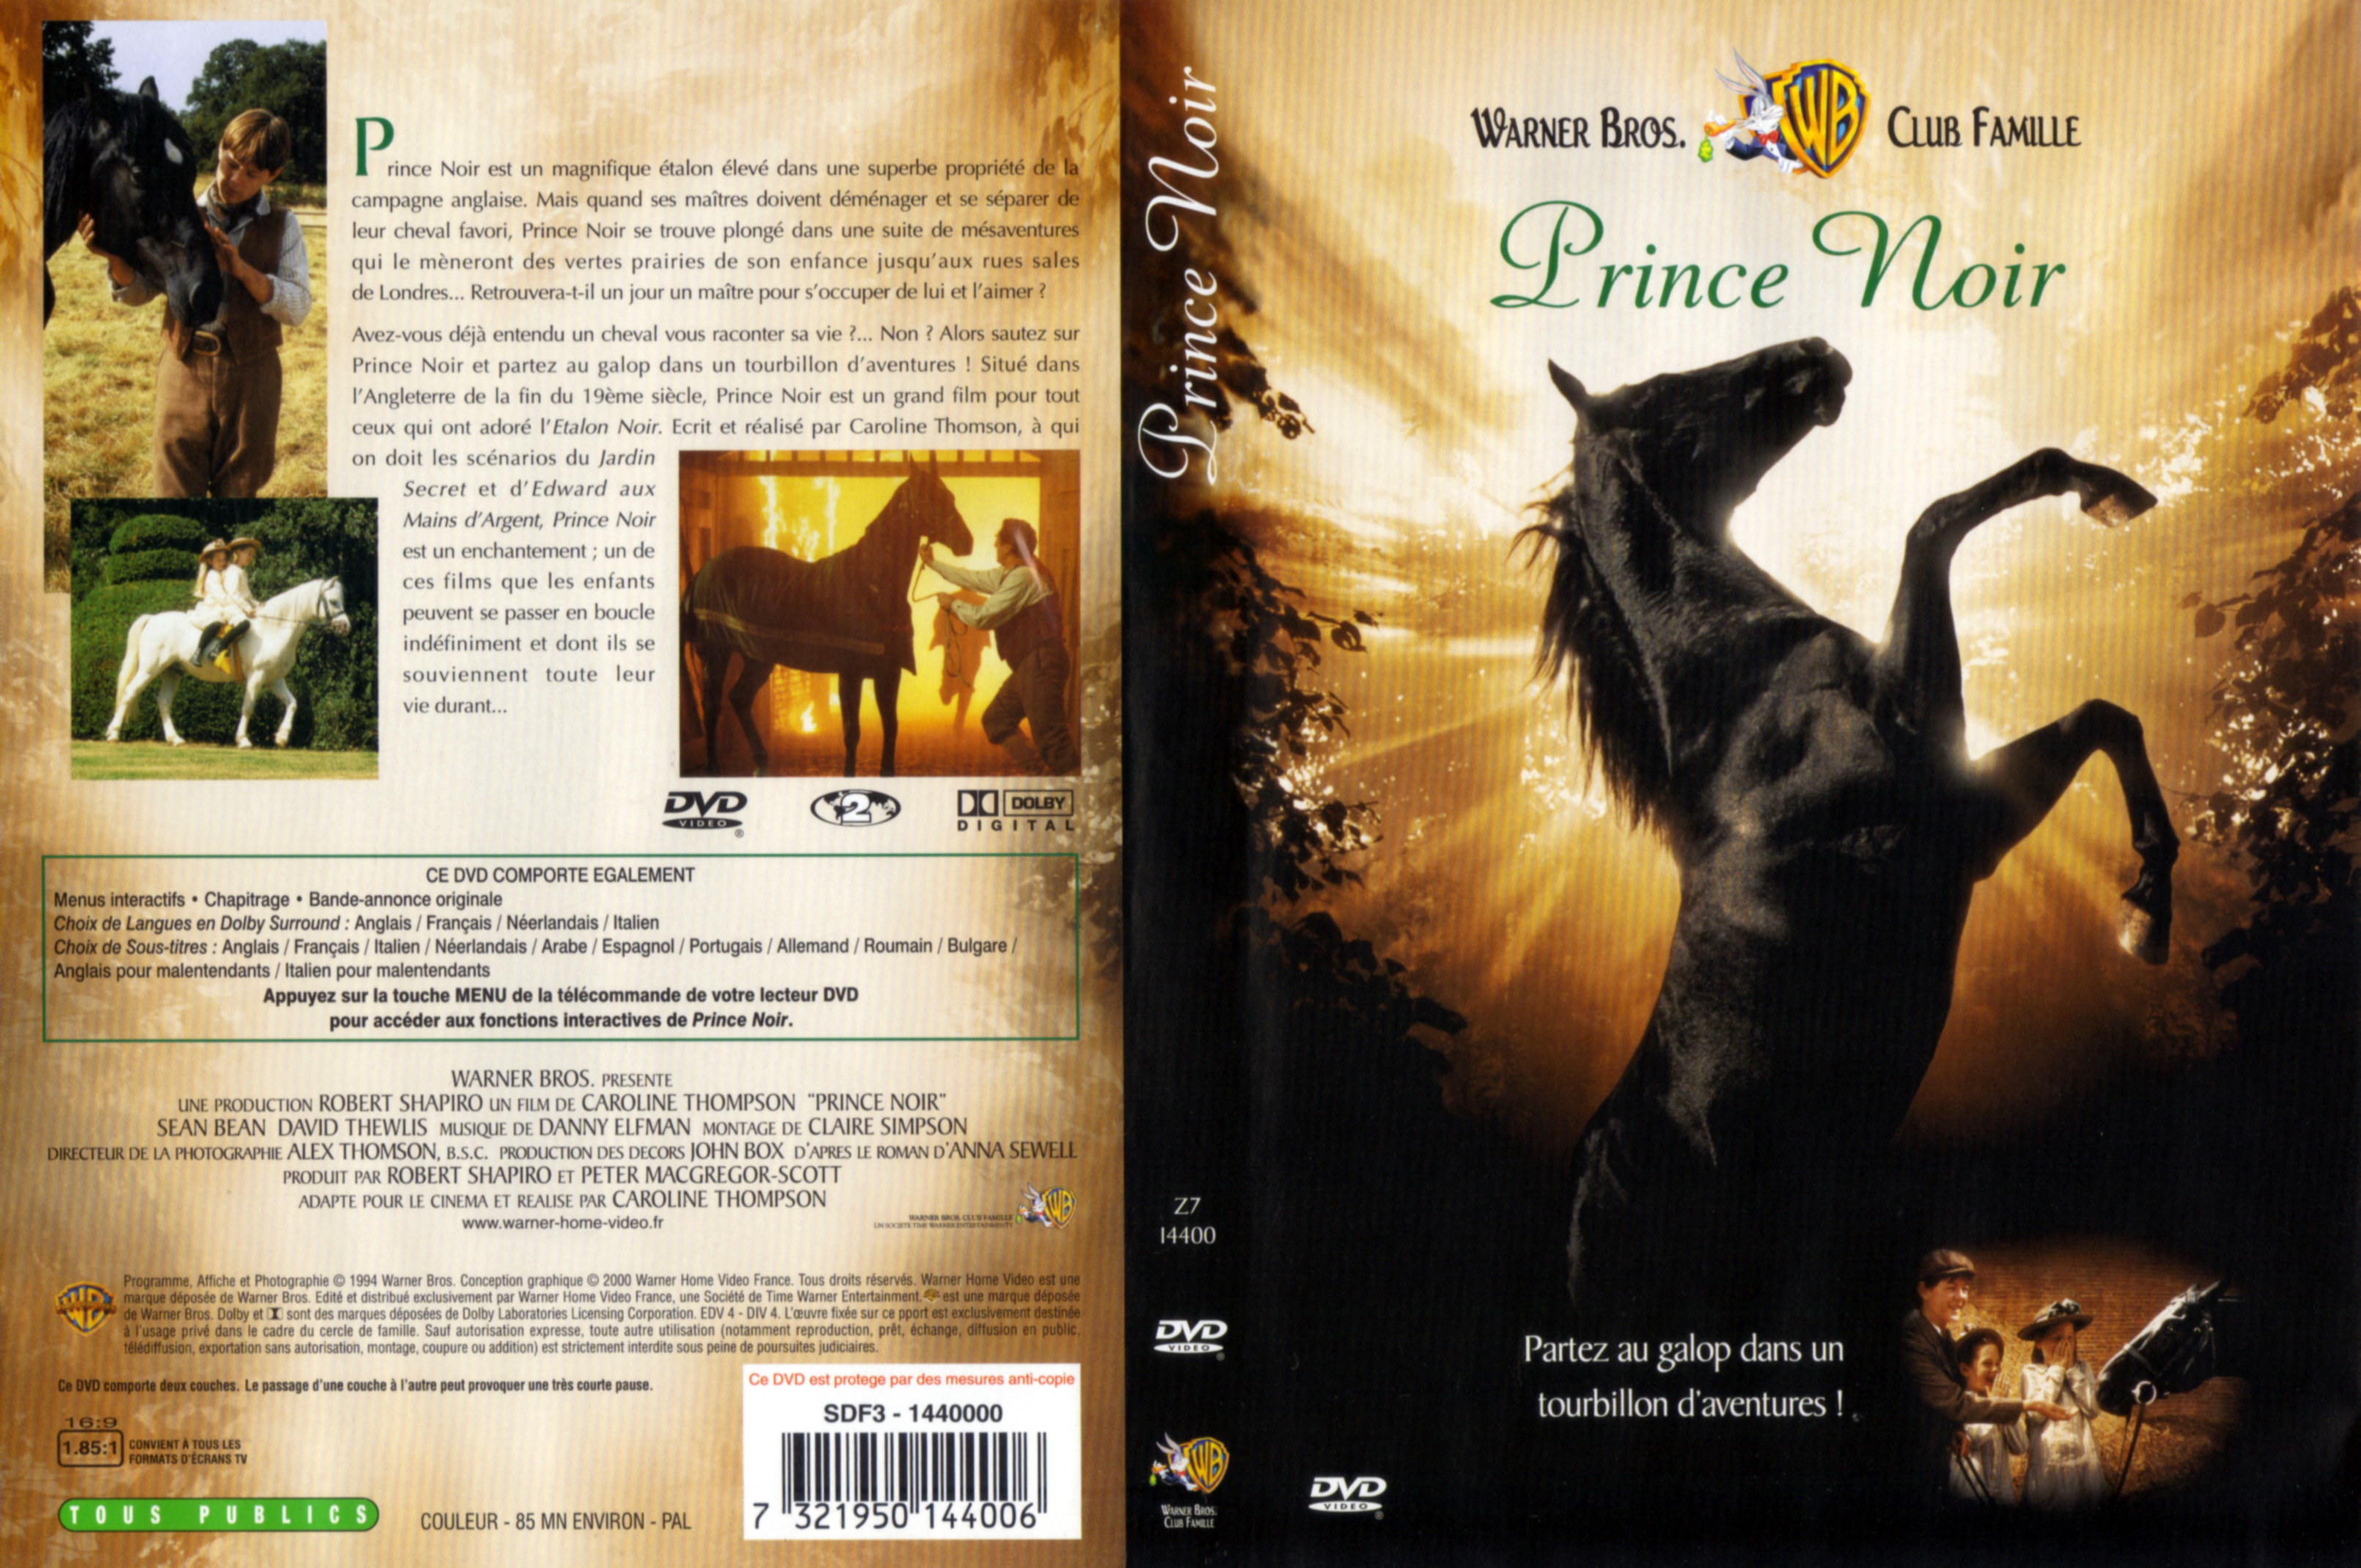 Jaquette DVD Prince noir v2